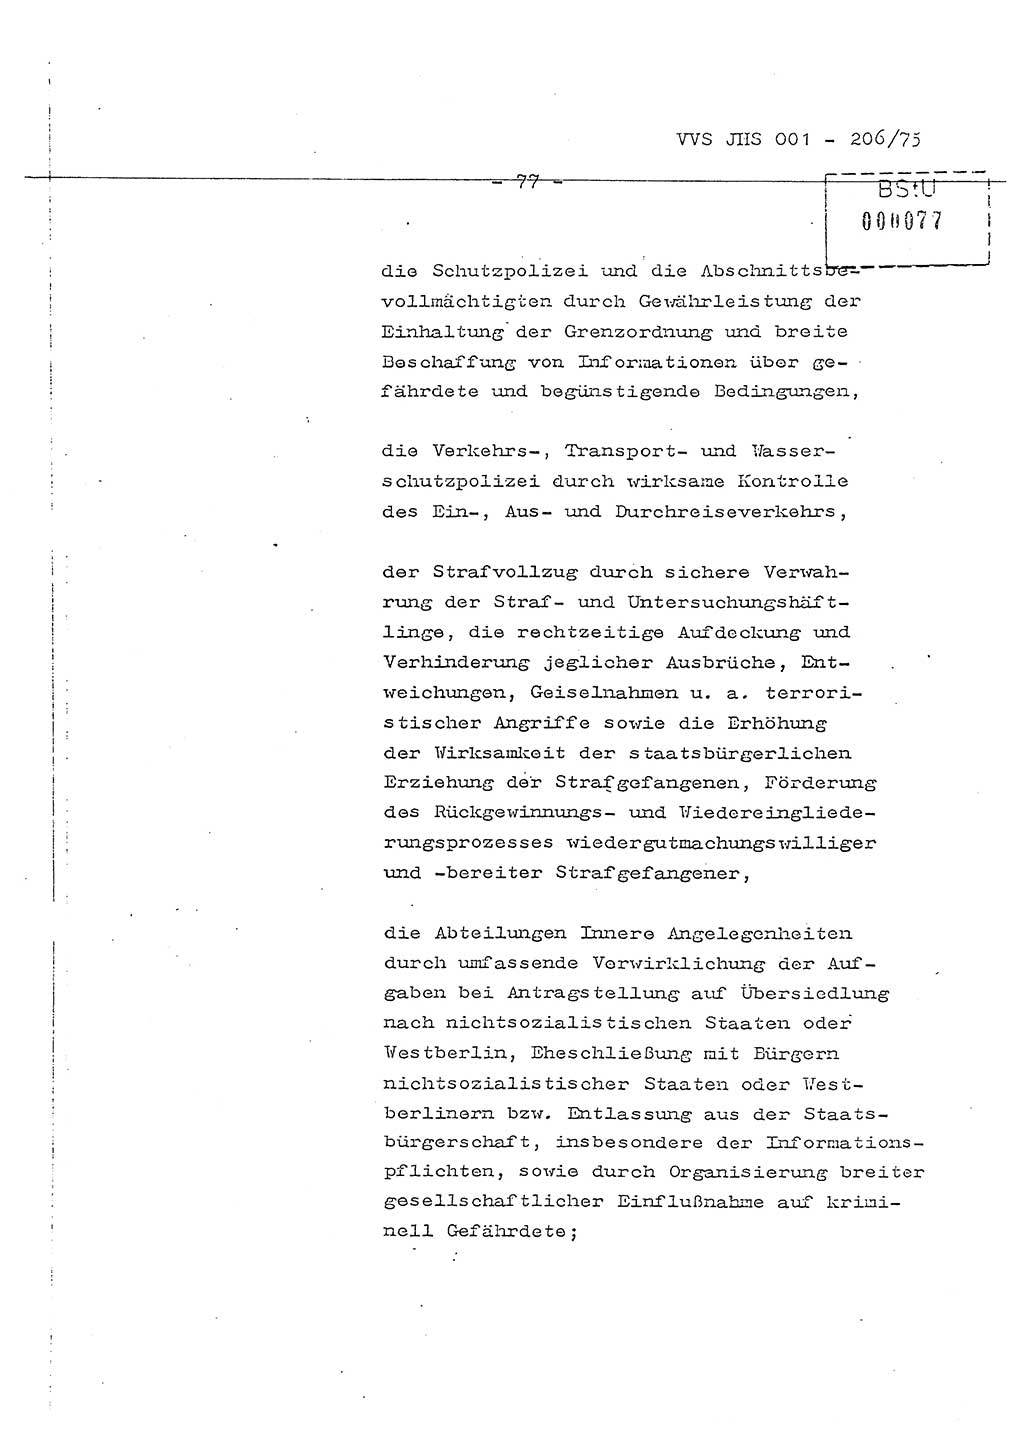 Dissertation Generalmajor Manfred Hummitzsch (Leiter der BV Leipzig), Generalmajor Heinz Fiedler (HA Ⅵ), Oberst Rolf Fister (HA Ⅸ), Ministerium für Staatssicherheit (MfS) [Deutsche Demokratische Republik (DDR)], Juristische Hochschule (JHS), Vertrauliche Verschlußsache (VVS) 001-206/75, Potsdam 1975, Seite 77 (Diss. MfS DDR JHS VVS 001-206/75 1975, S. 77)